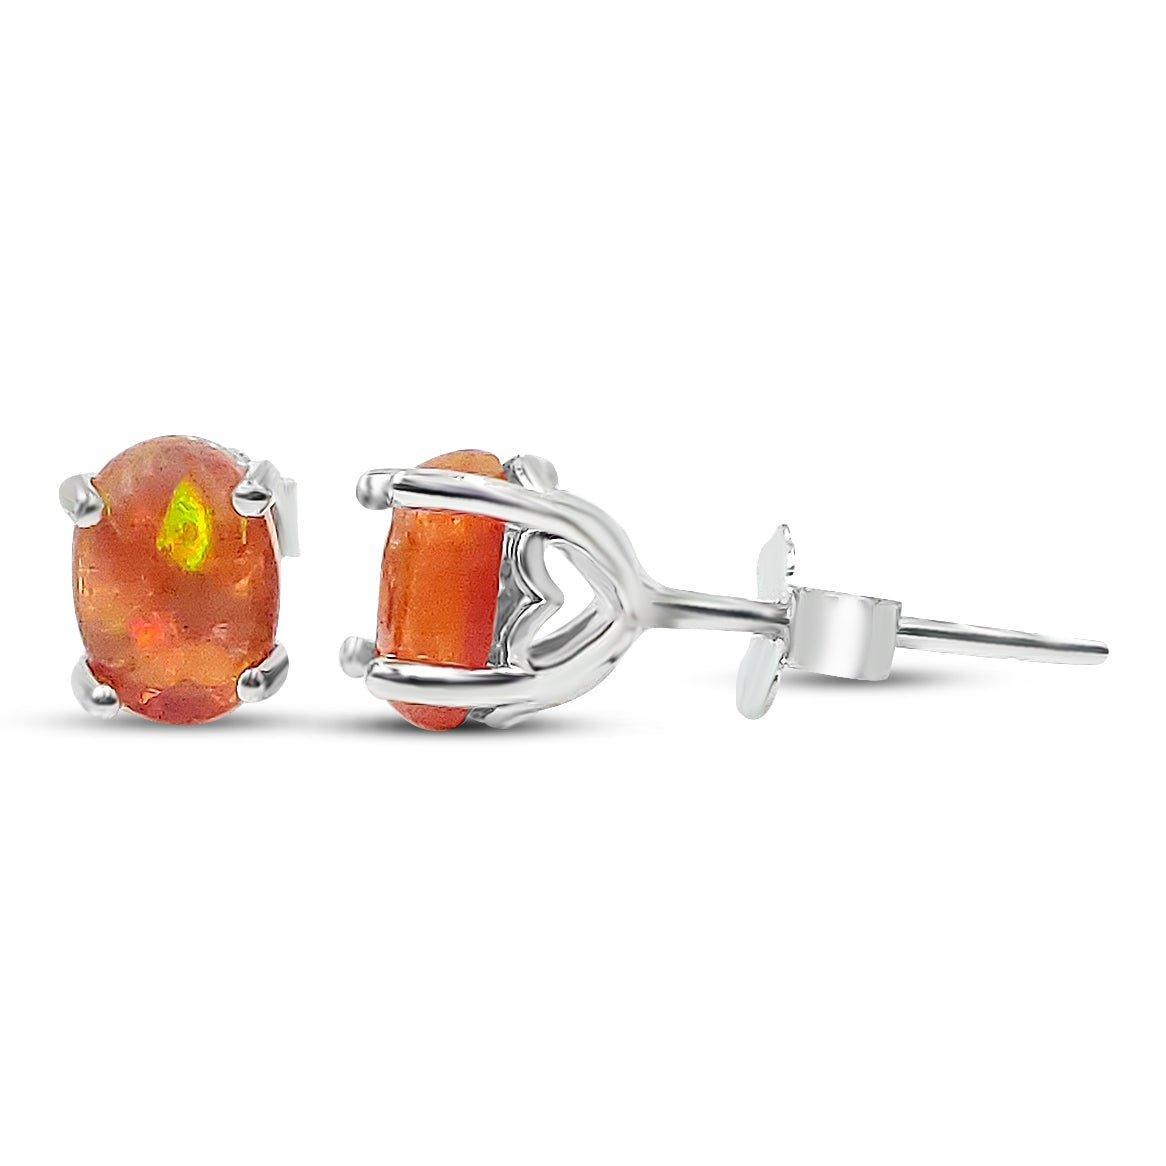 Oval Orange Opal Heart Earrings - Uniquelan Jewelry